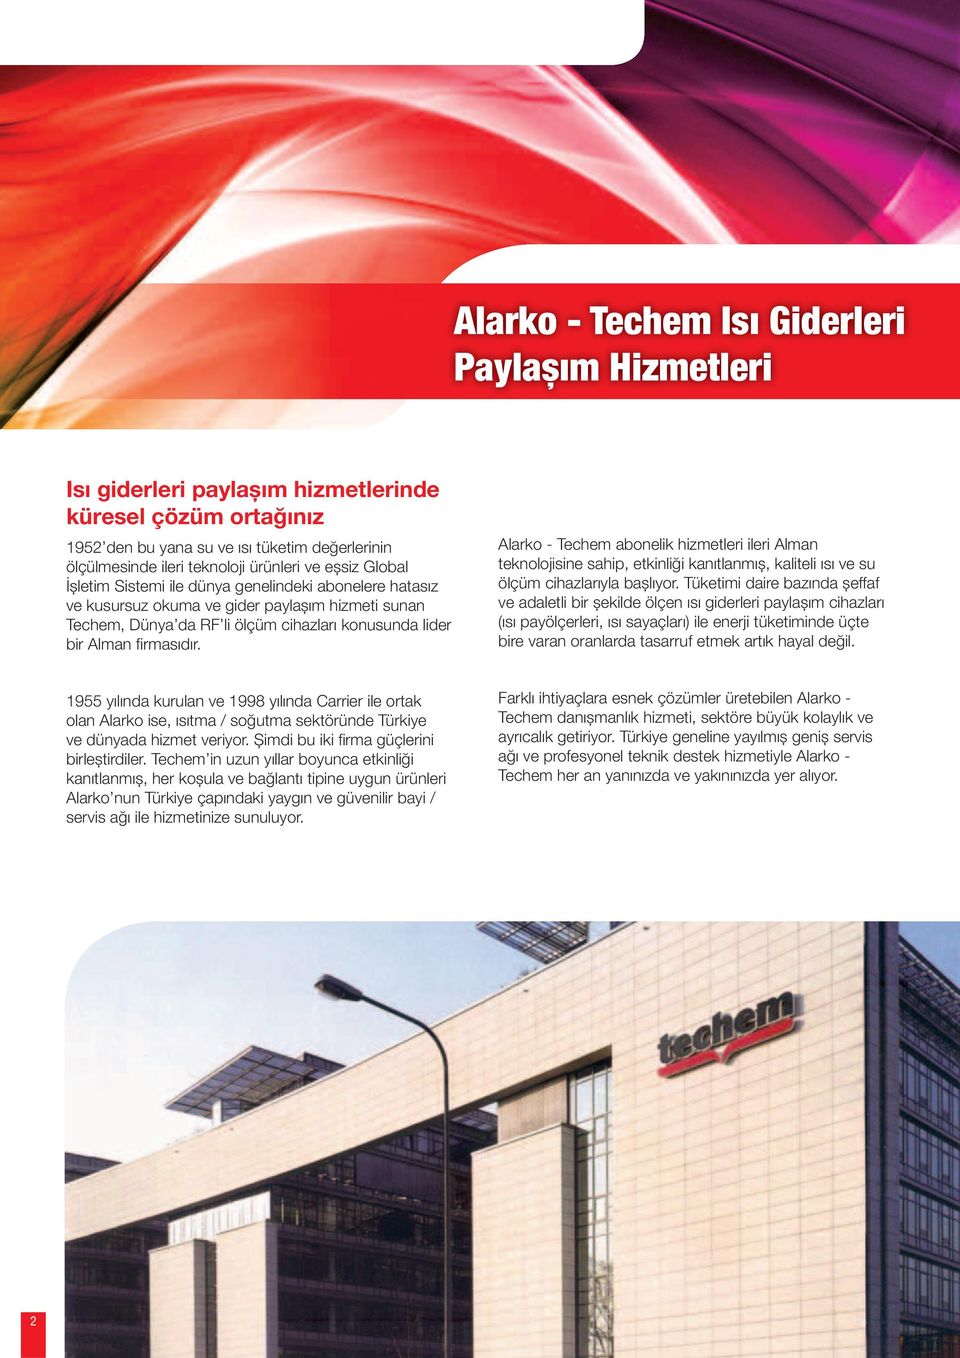 Alarko - Techem abonelik hizmetleri ileri Alman teknolojisine sahip, etkinliği kanıtlanmıș, kaliteli ısı ve su ölçüm cihazlarıyla bașlıyor.